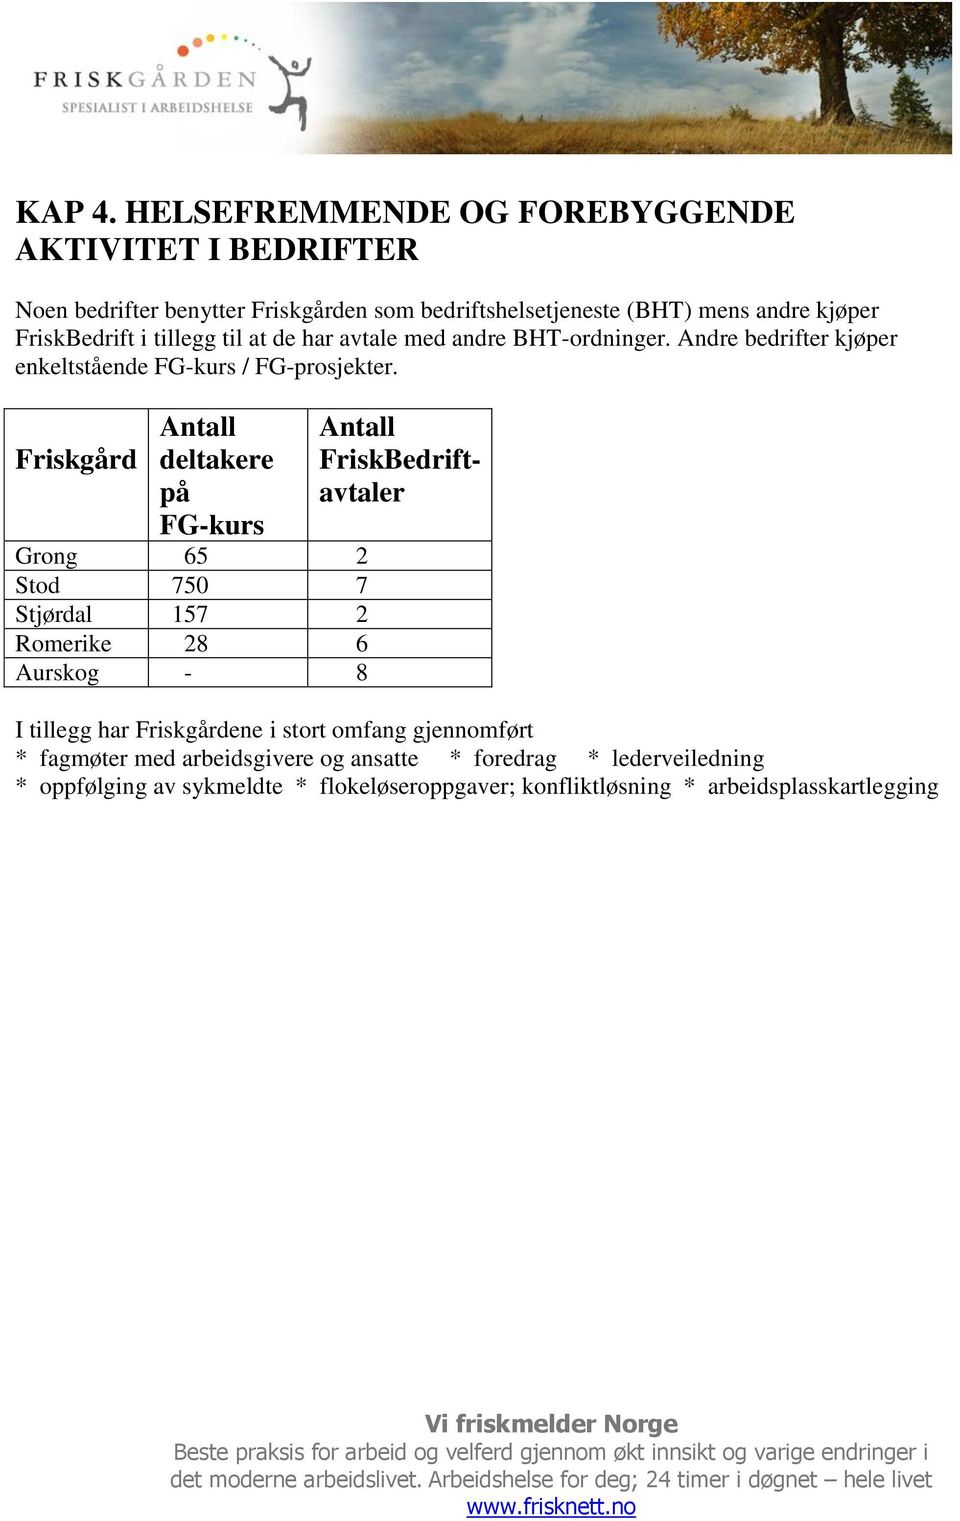 FriskBedrift i tillegg til at de har avtale med andre BHT-ordninger. Andre bedrifter kjøper enkeltstående FG-kurs / FG-prosjekter.